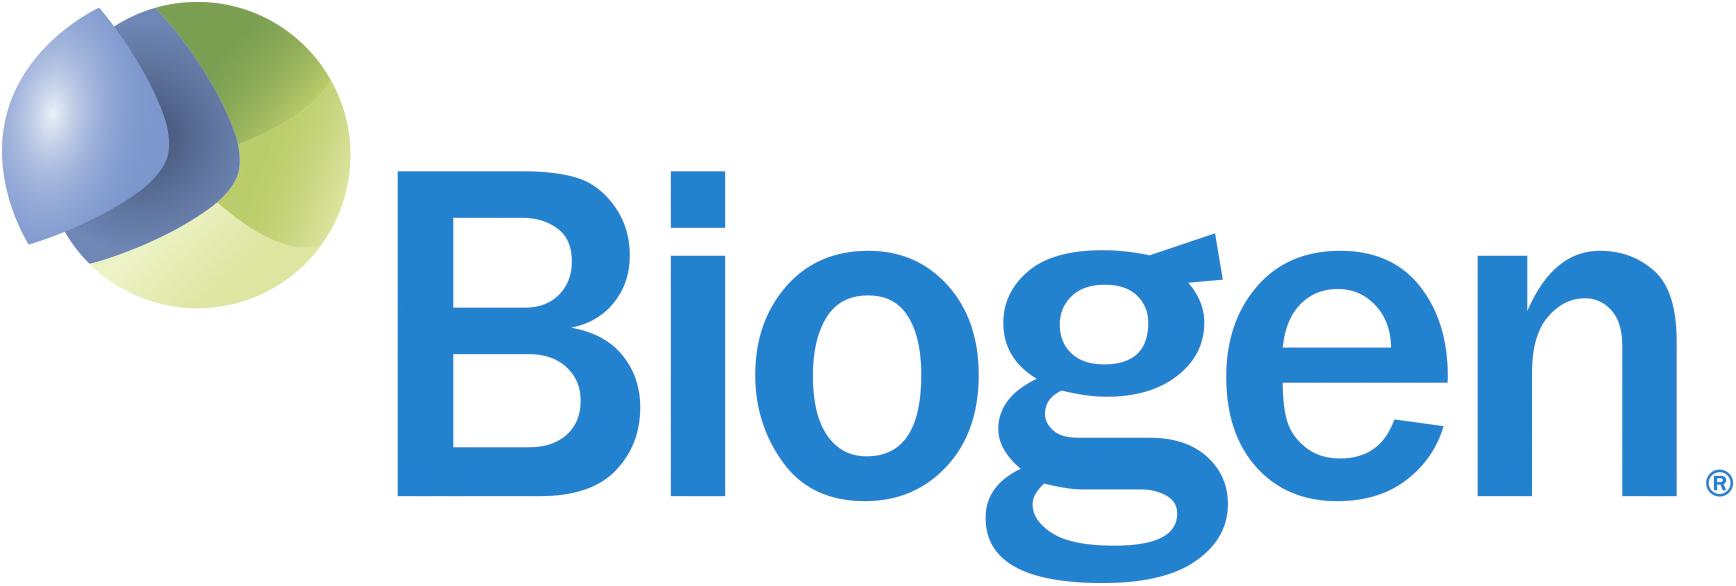 Biogen R logo